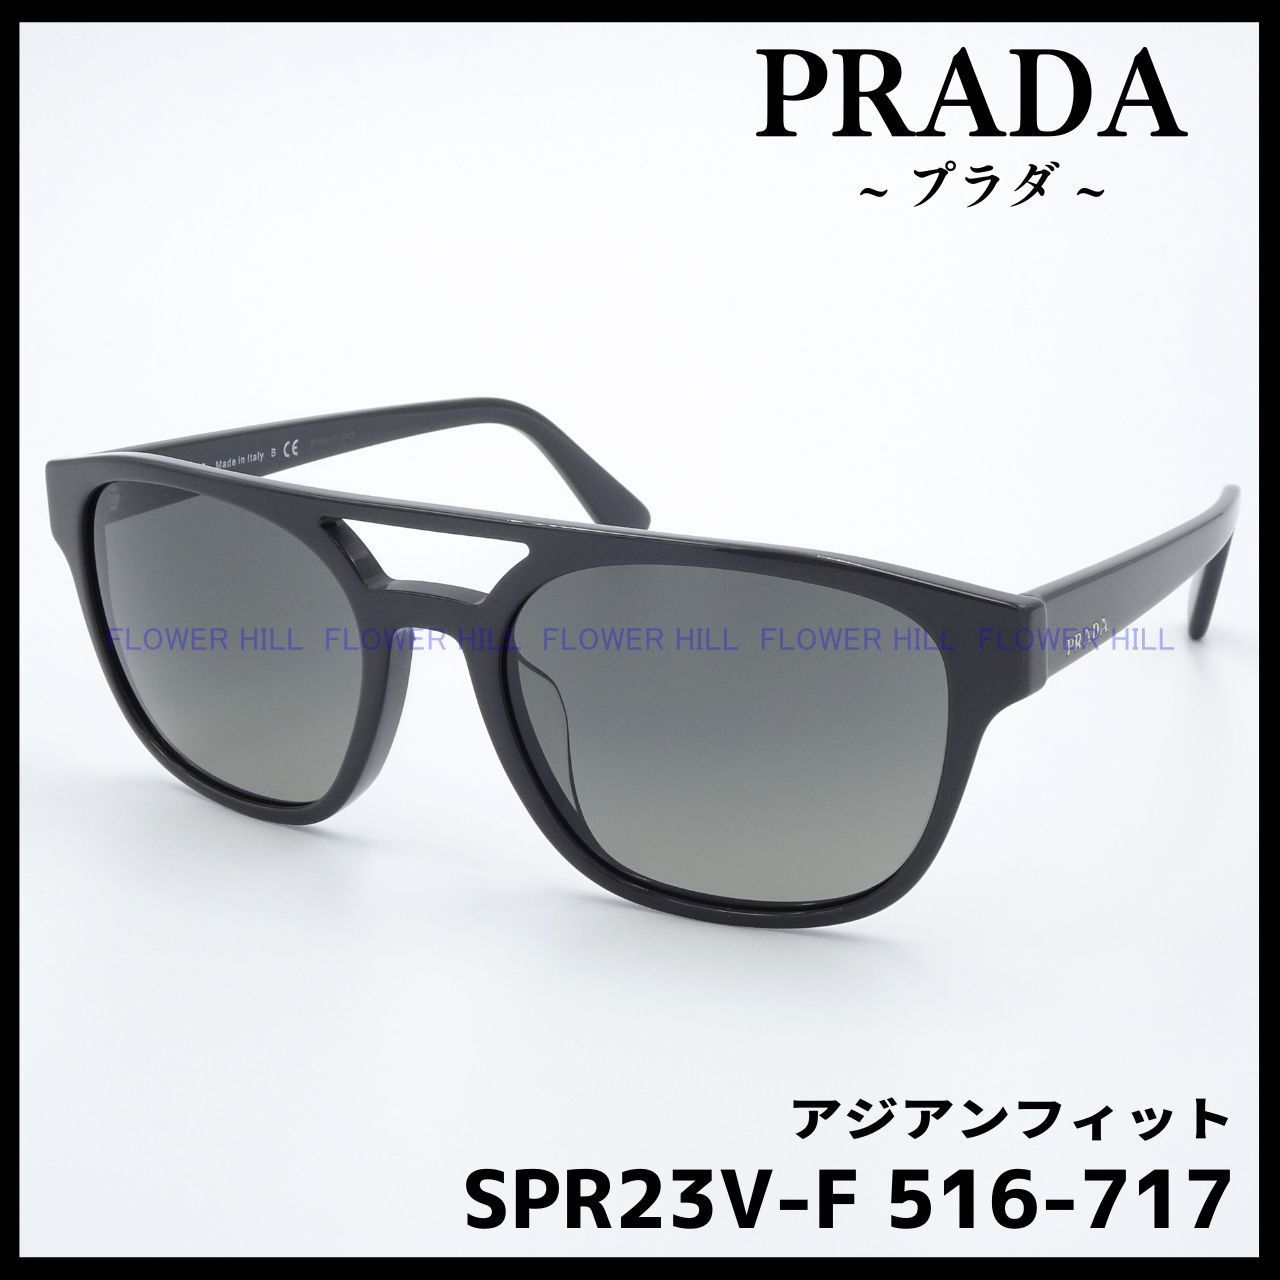 プラダ PRADA  サングラス アジアンフィット SPR23V-F 516FlowerHillPRADA